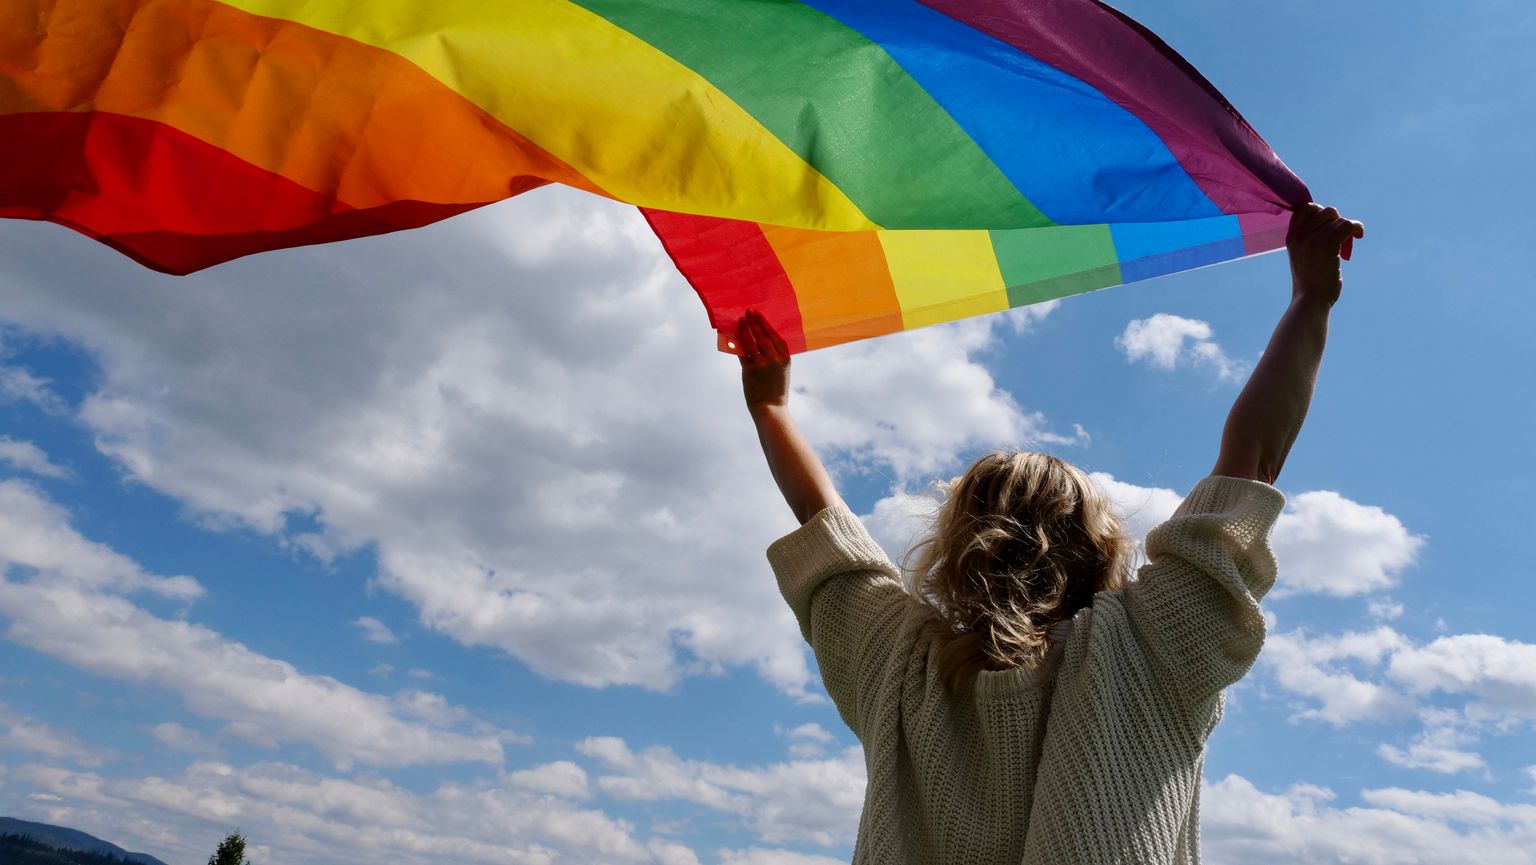 Блондинка-лесбиянка держит радужный флаг гендерной идентичности ЛГБТ. Фото иллюстративное.